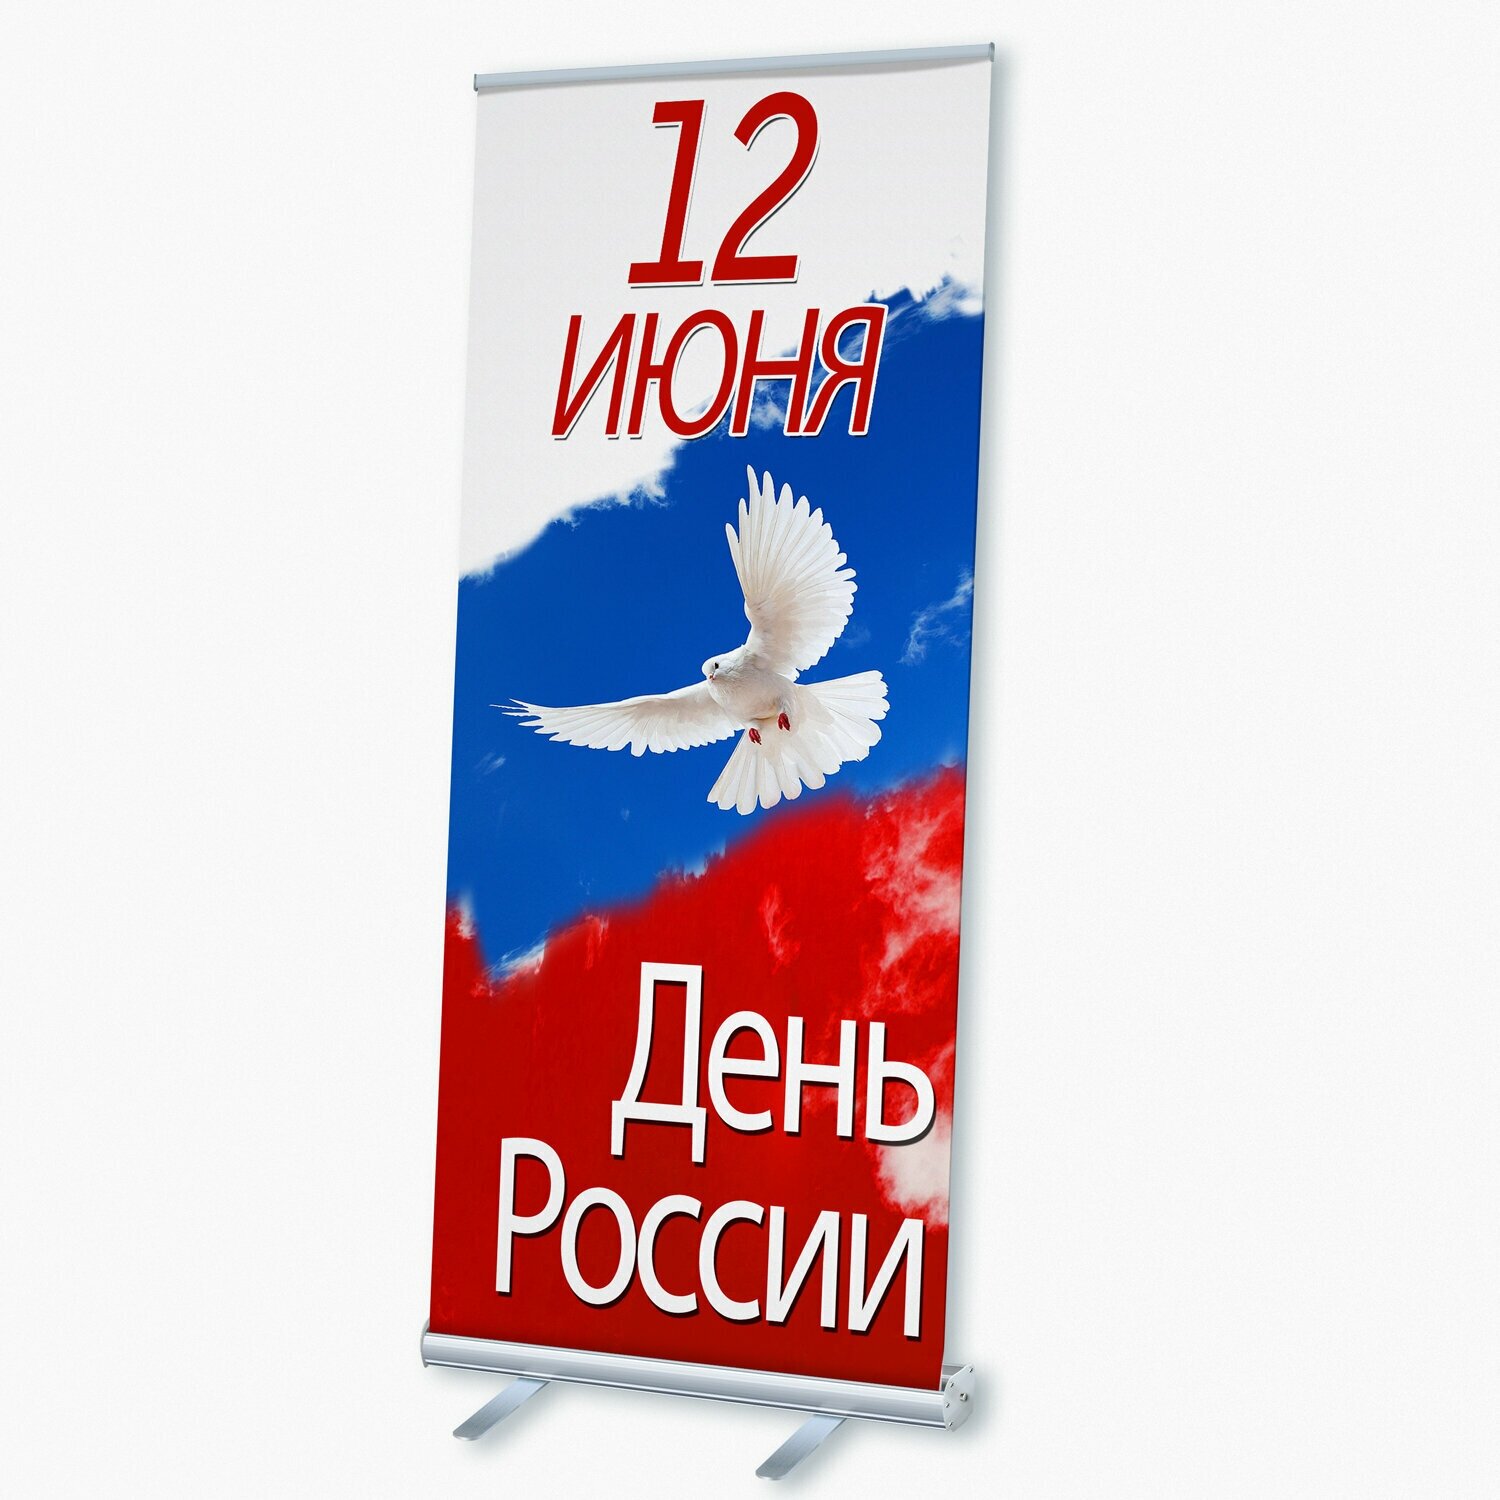 Мобильный cтенд Ролл Ап (Roll Up) с печатью баннера на День России / 100x200 см.